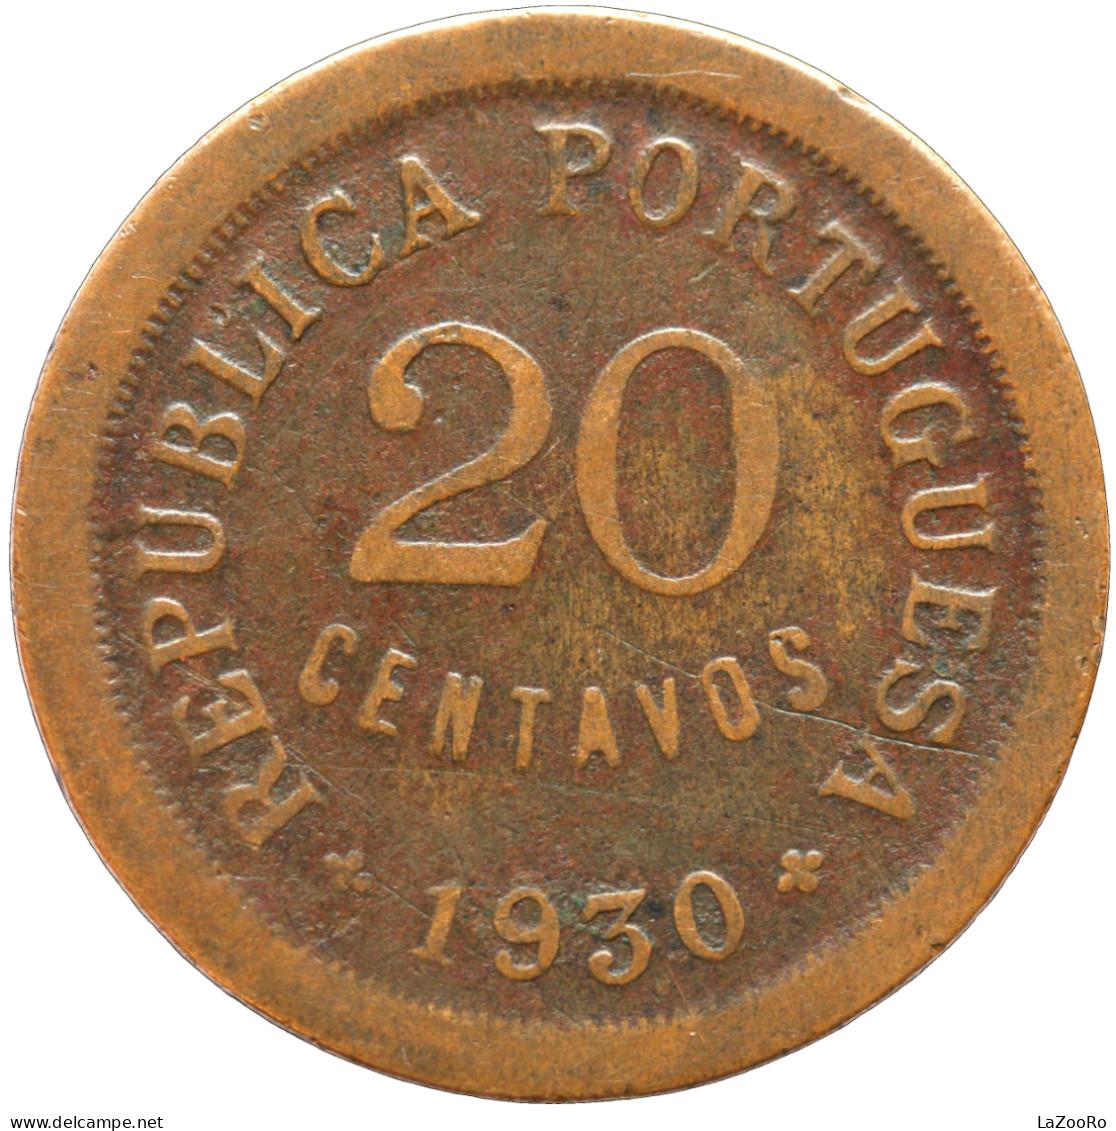 LaZooRo: Portuguese Cape Verde 20 Centavos 1930 VF - Cabo Verde